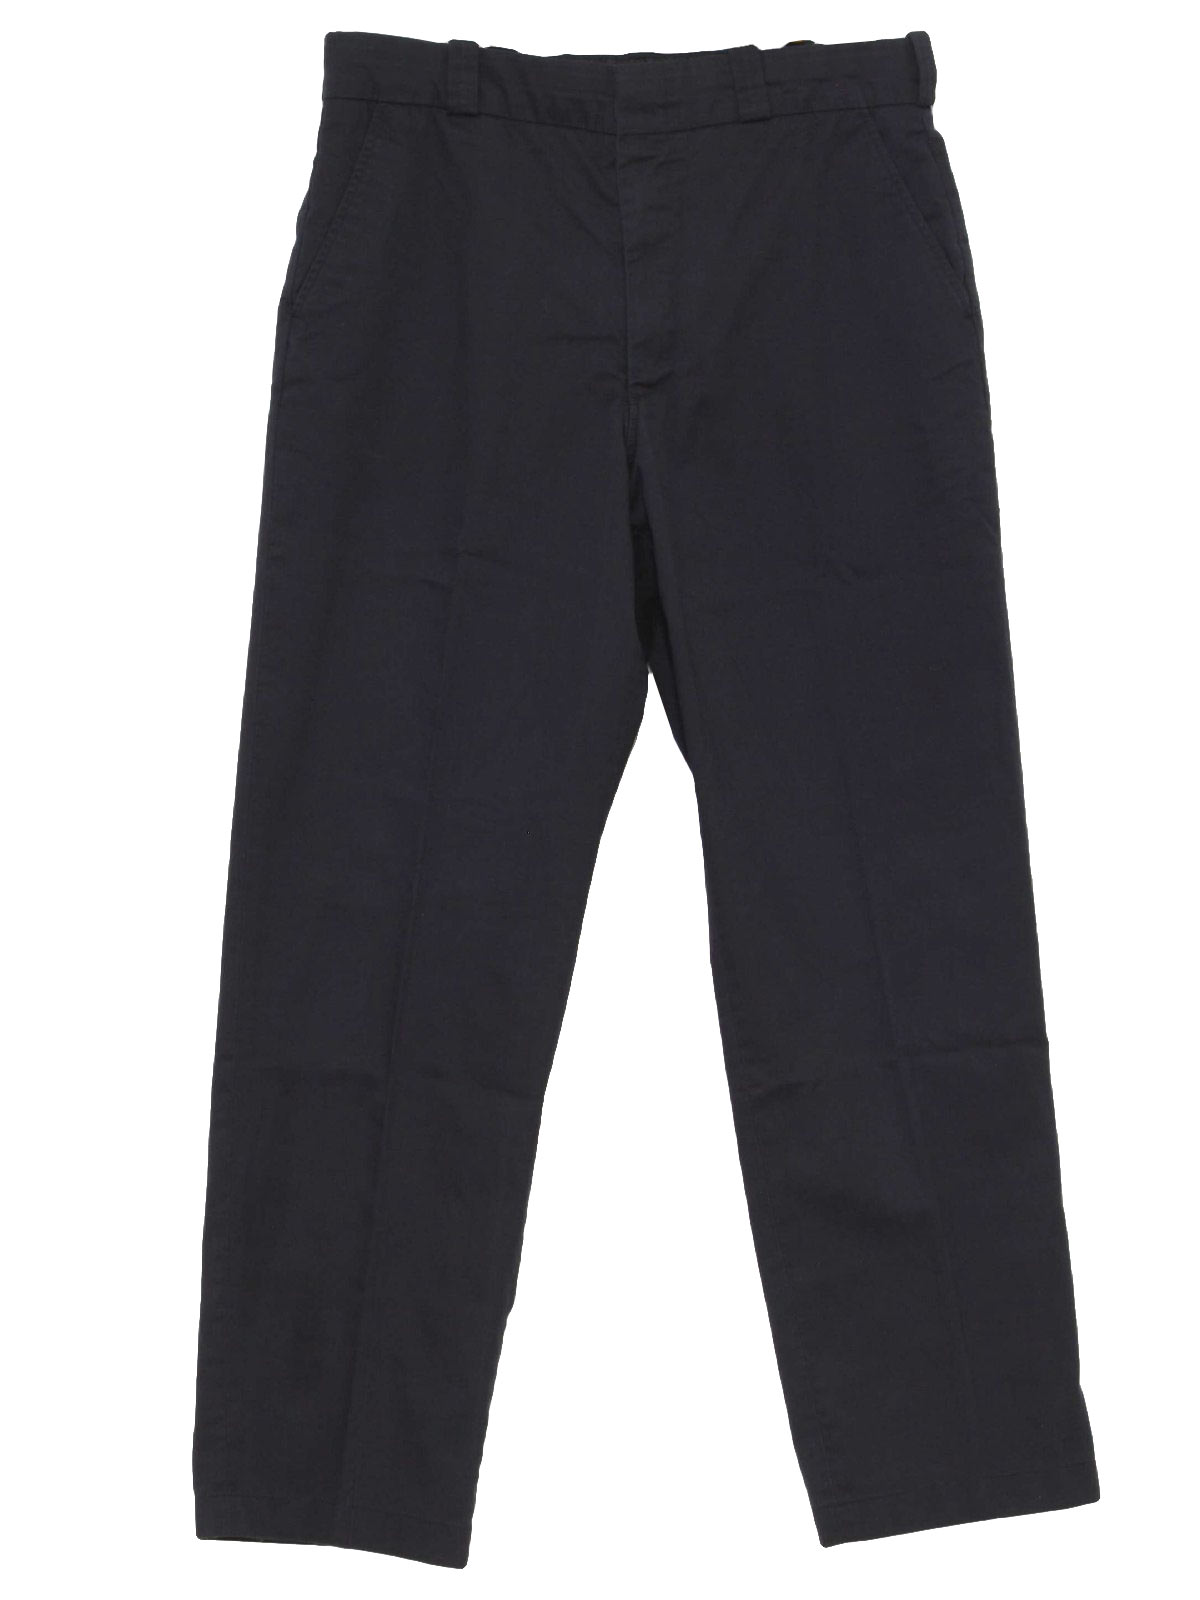 Retro 1990's Pants (Elbeco) : 80s -Elbeco- Mens navy blue cotton ...